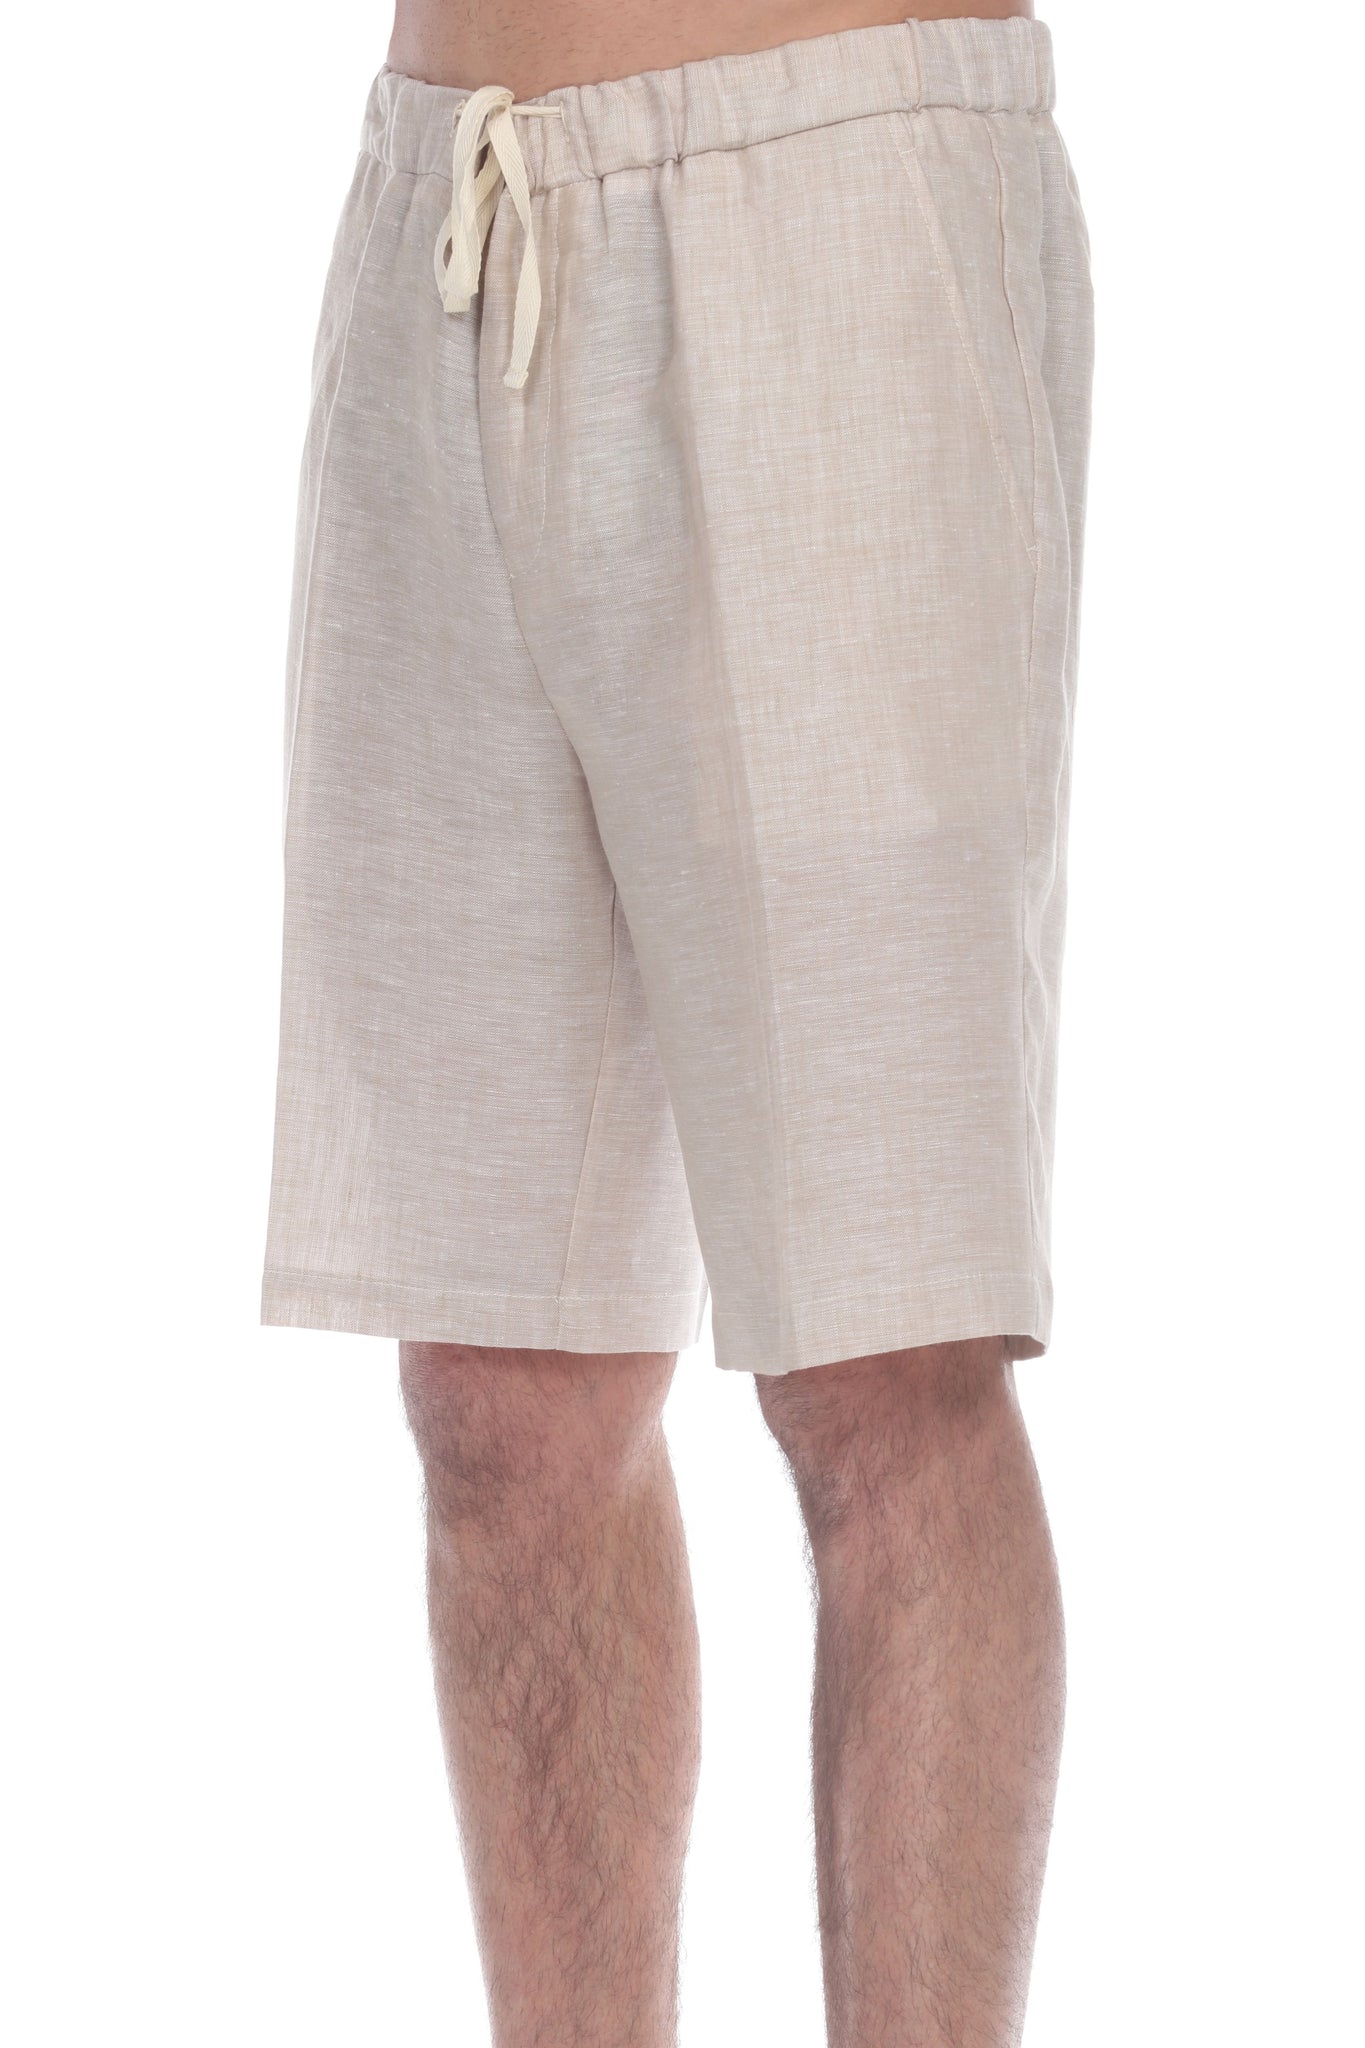 Natural Linen Shorts, Resortwear Shorts